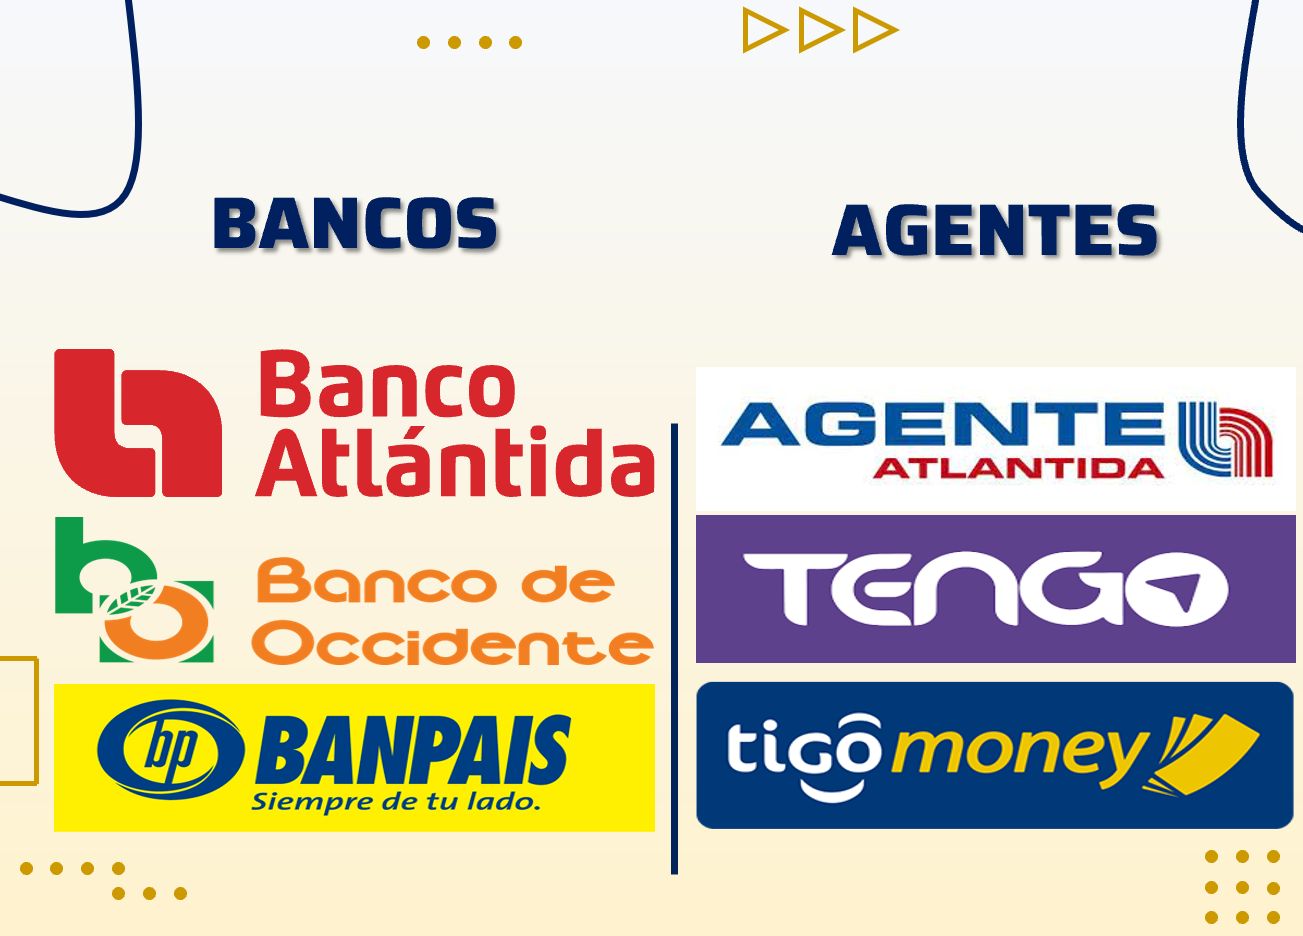 Banco Atlántida, Banco de Occidente, Banpais, Agente Atlántida, Puntos y Billetera TENGO, Tigo Money.